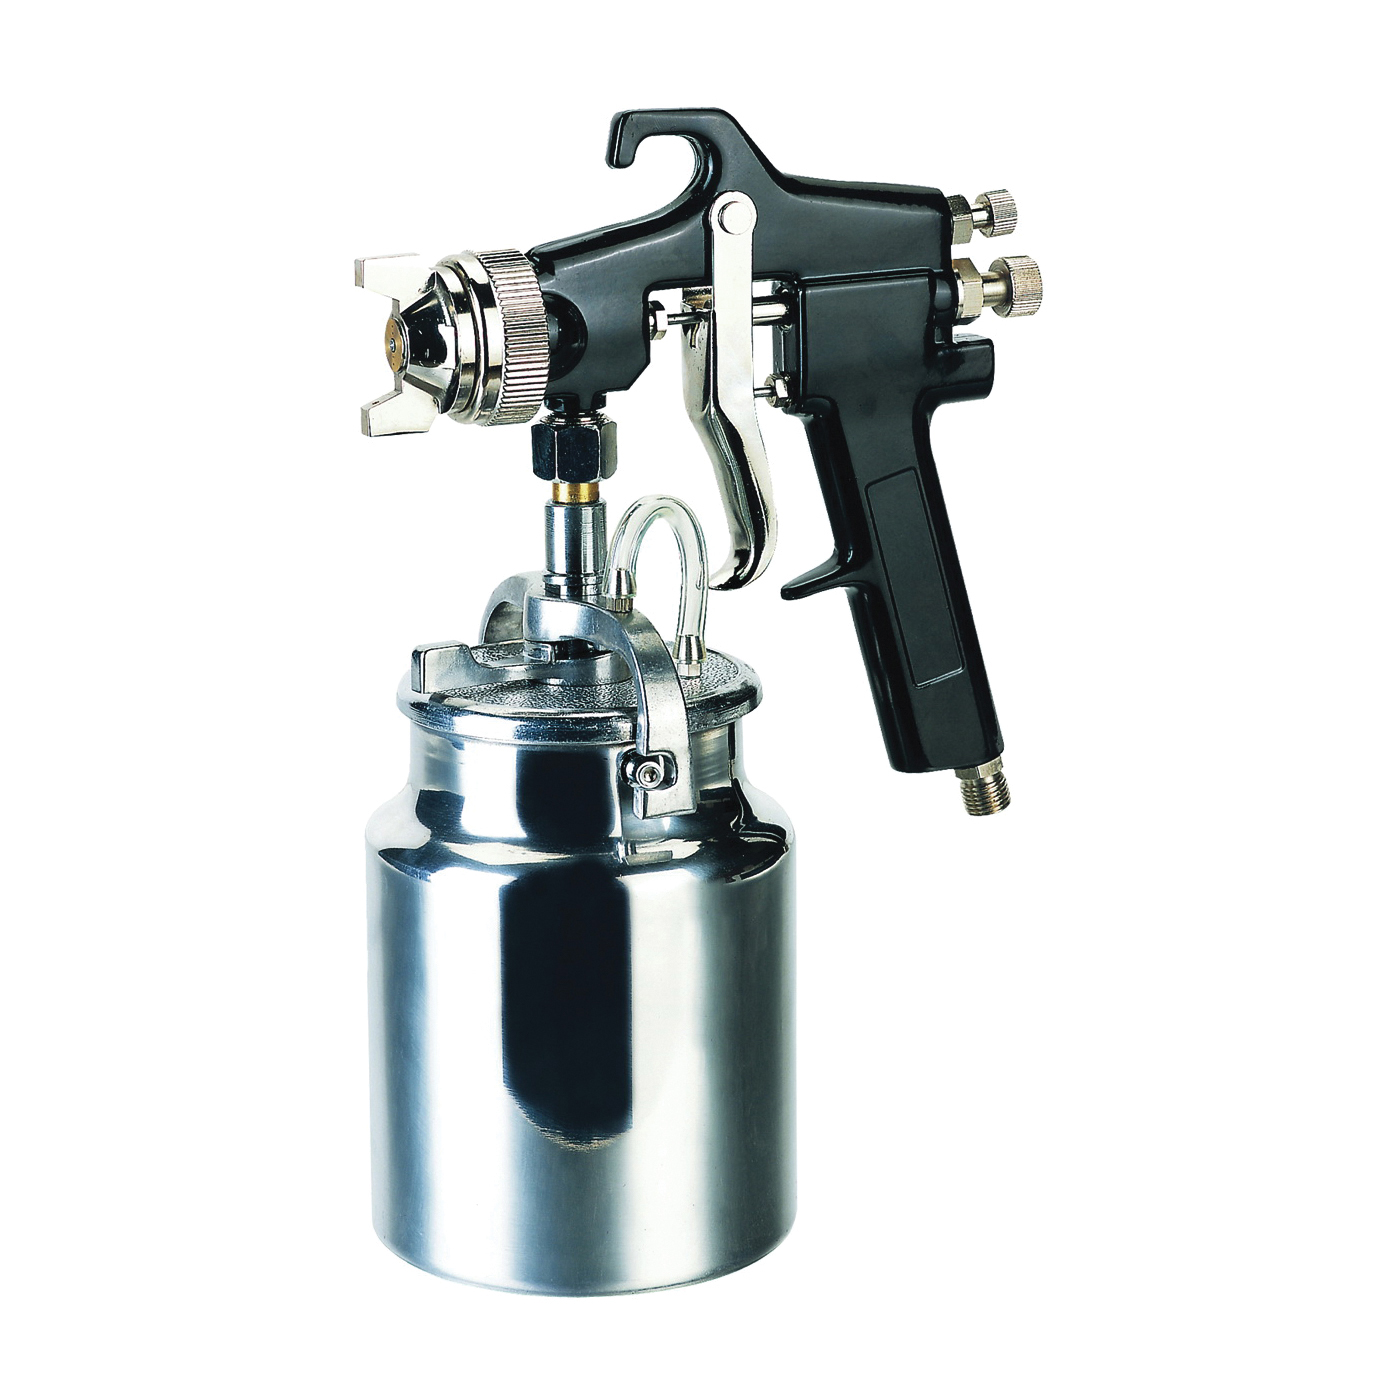 50180 Spray Gun, 1.7 mm Nozzle, Siphon Feed Throttle, 6 cfm Air, 50 to 70 psi Air